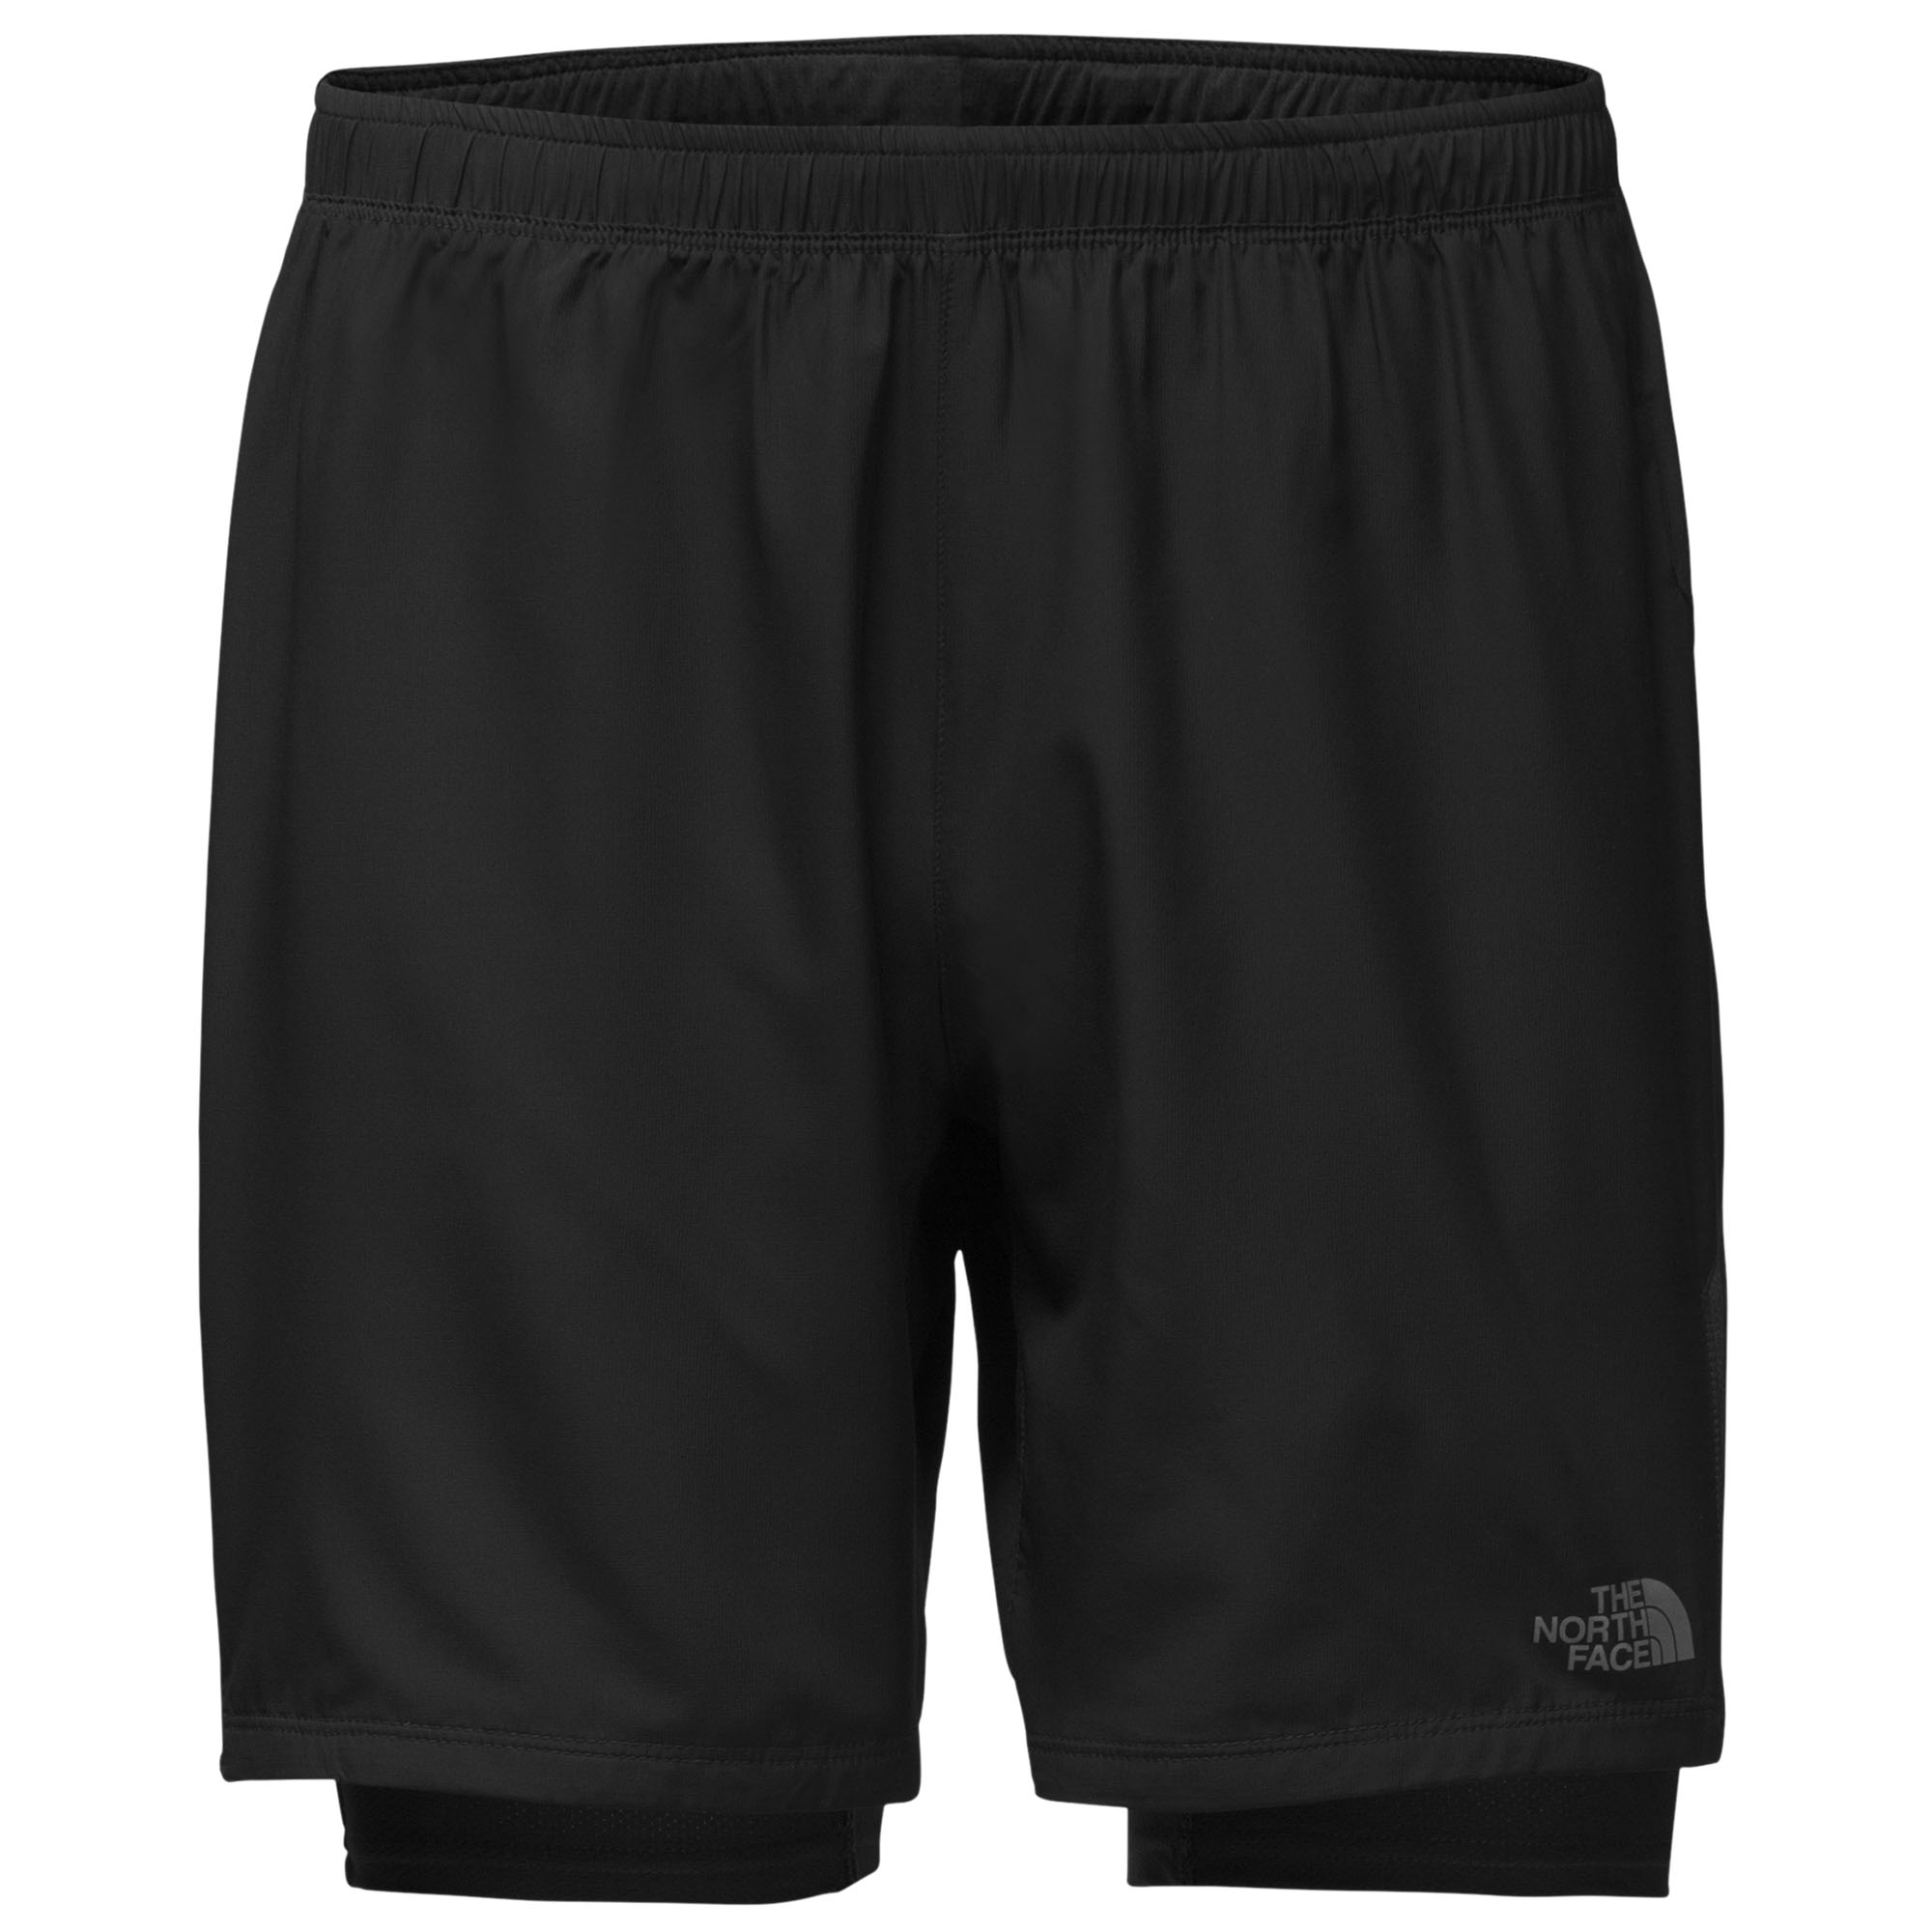 men's ambition dual shorts